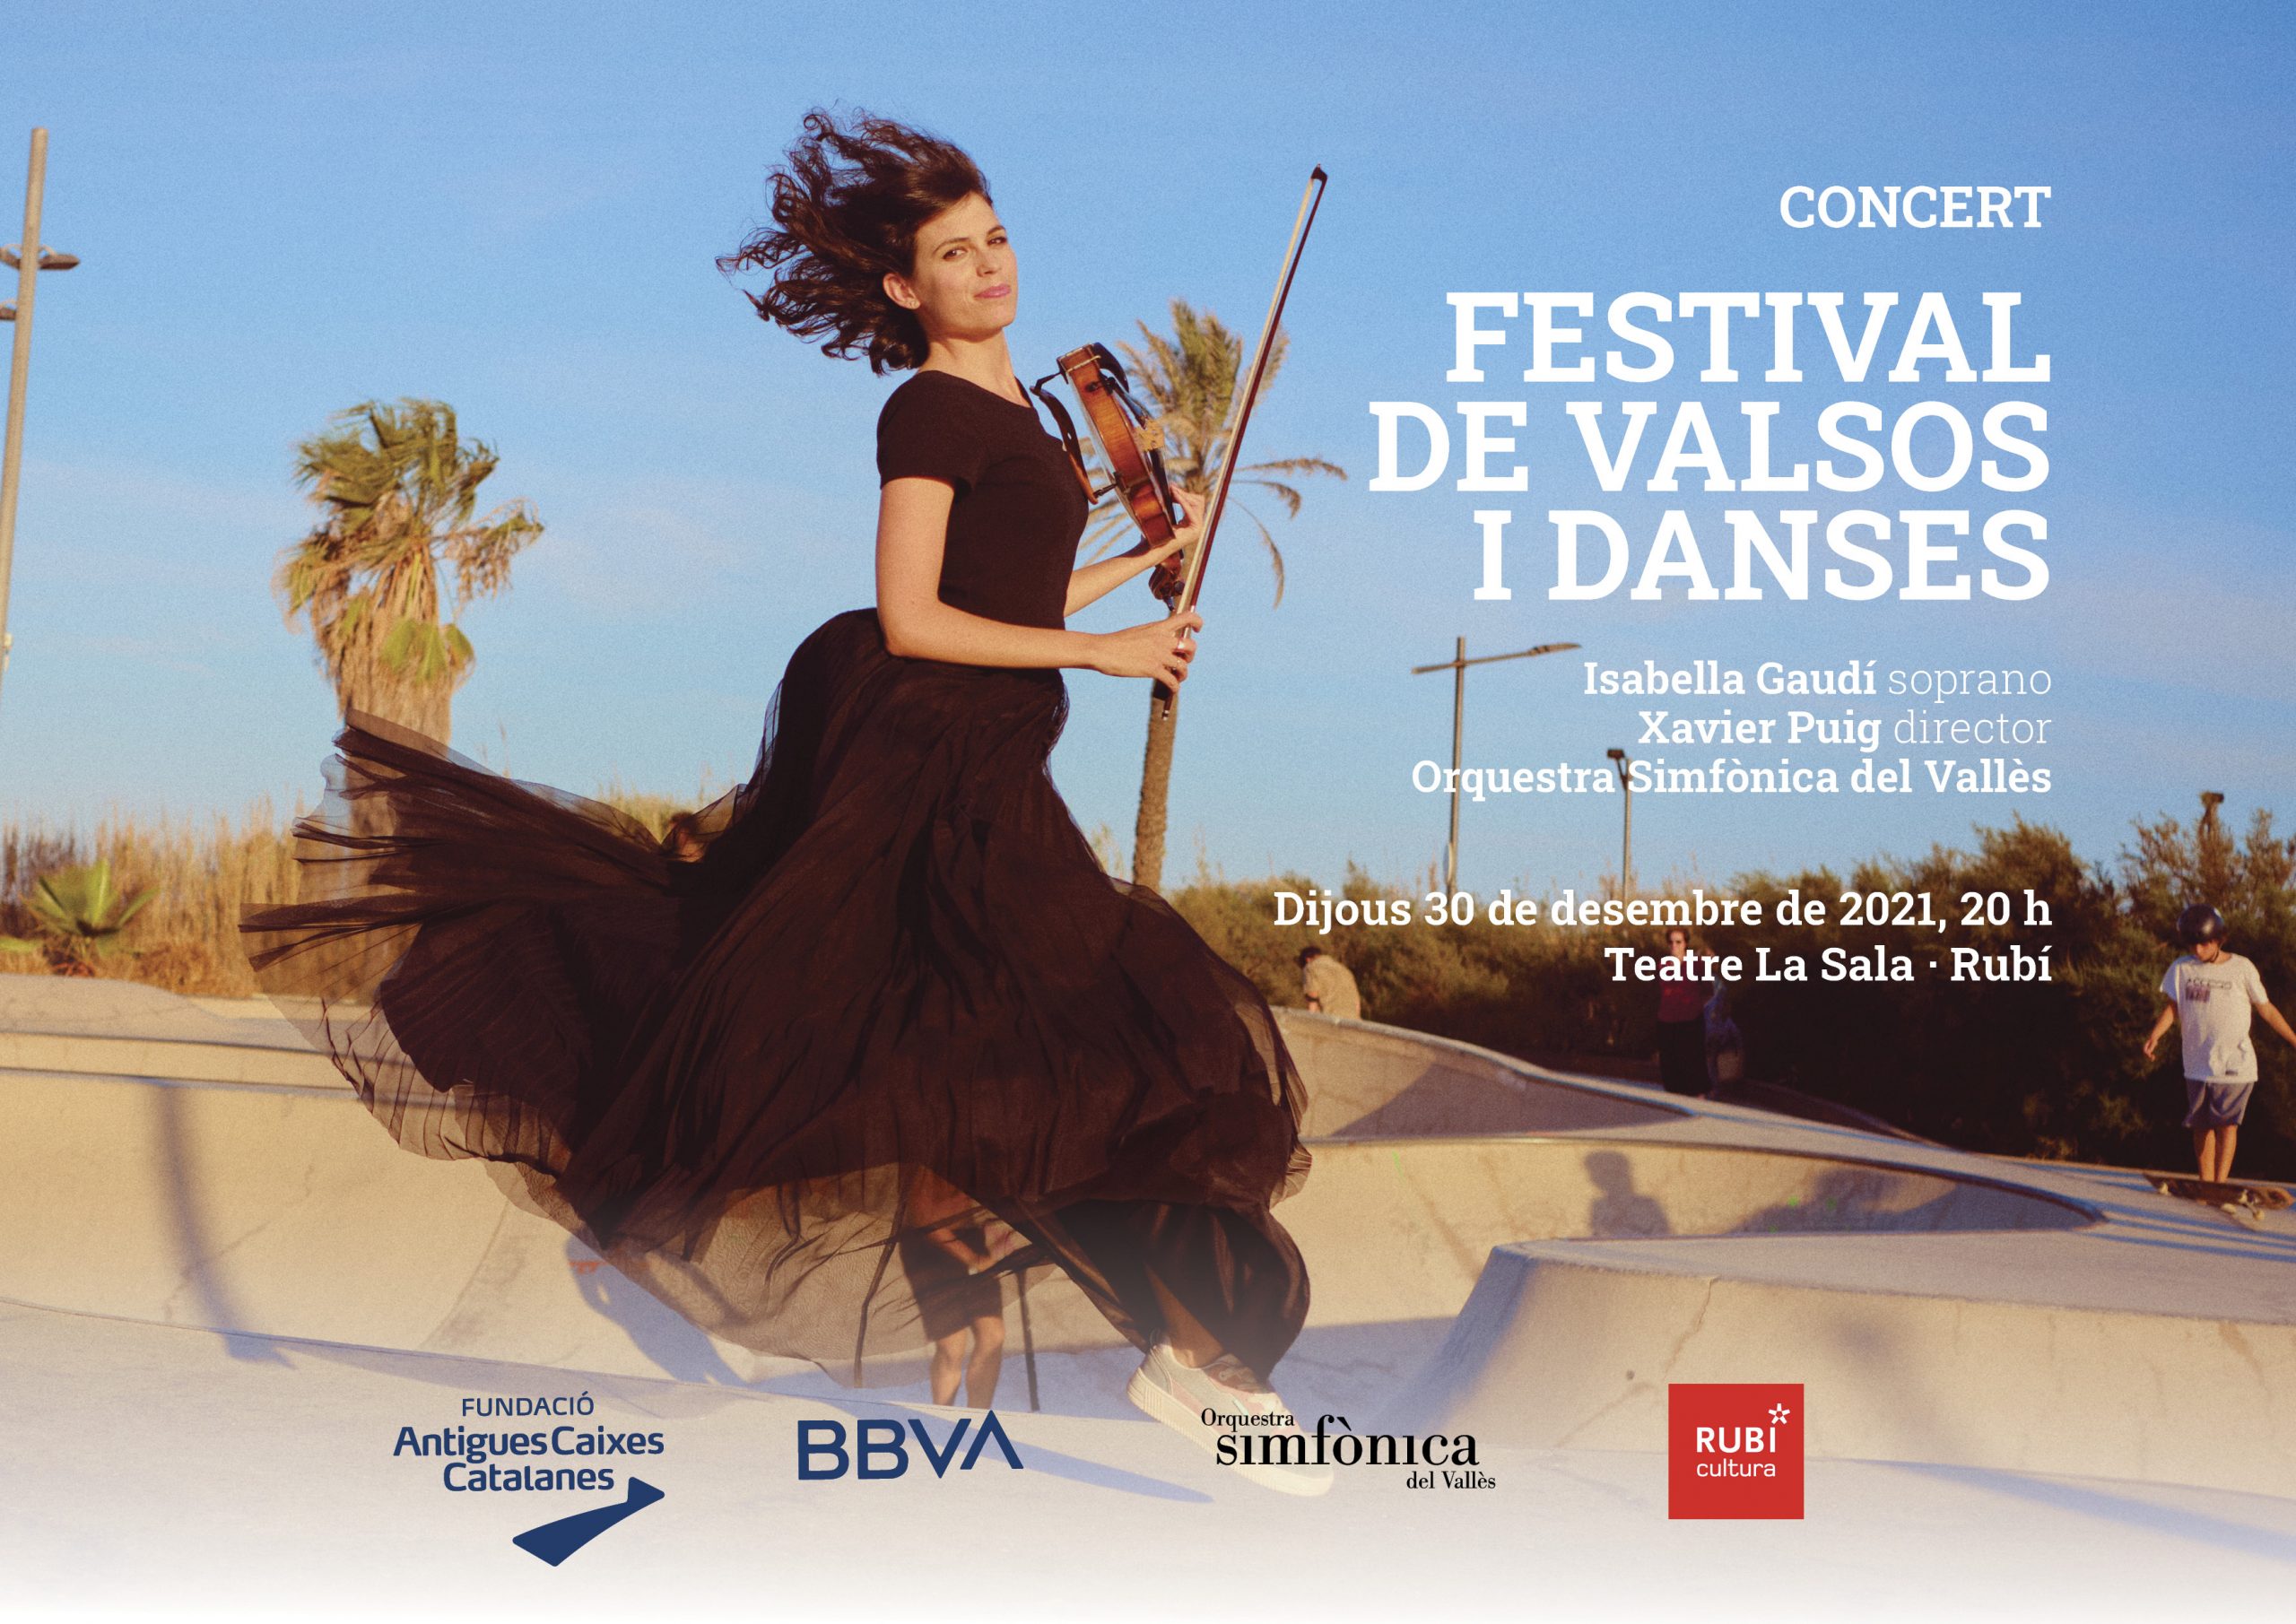 Concert Festival de Valsos i Danses